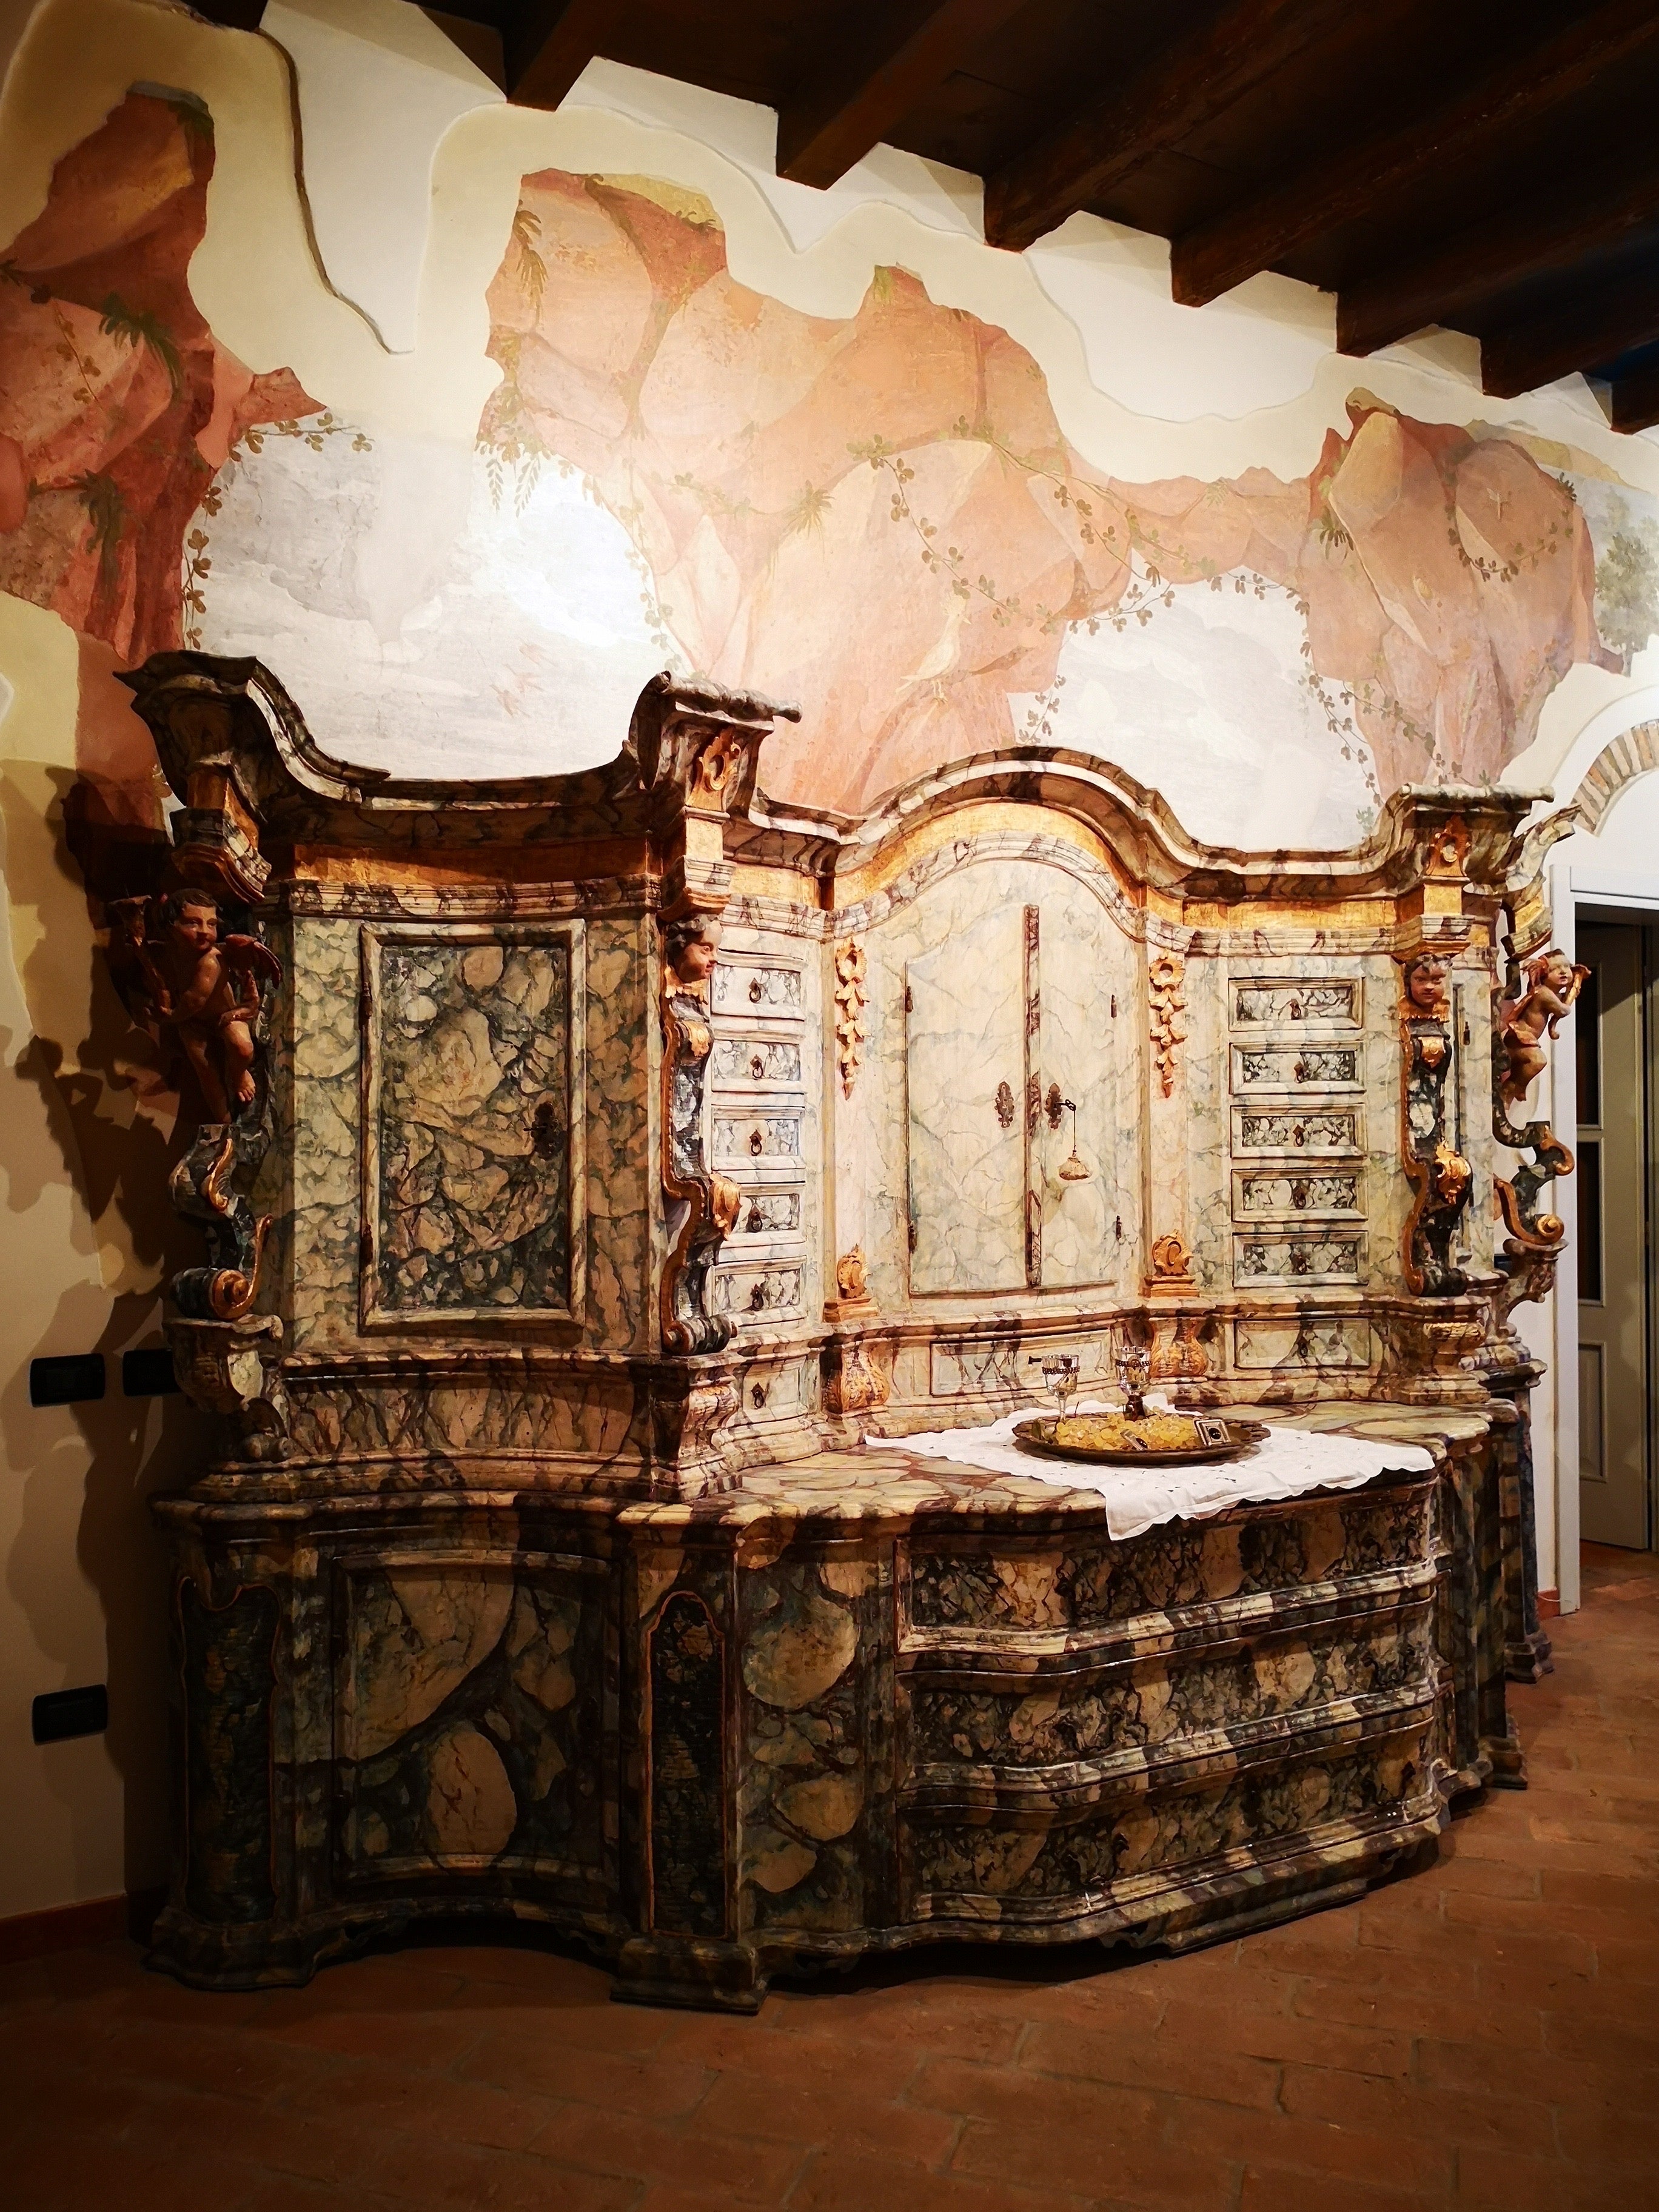 Ce meuble monumental, de provenance vénitienne et haut-vénitienne, est entièrement réalisé en bois de sapin laqué. Variously du XVIIe siècle (vers 1650) se présente comme un imposant buffet à double corps, entièrement laqué en faux marbre avec